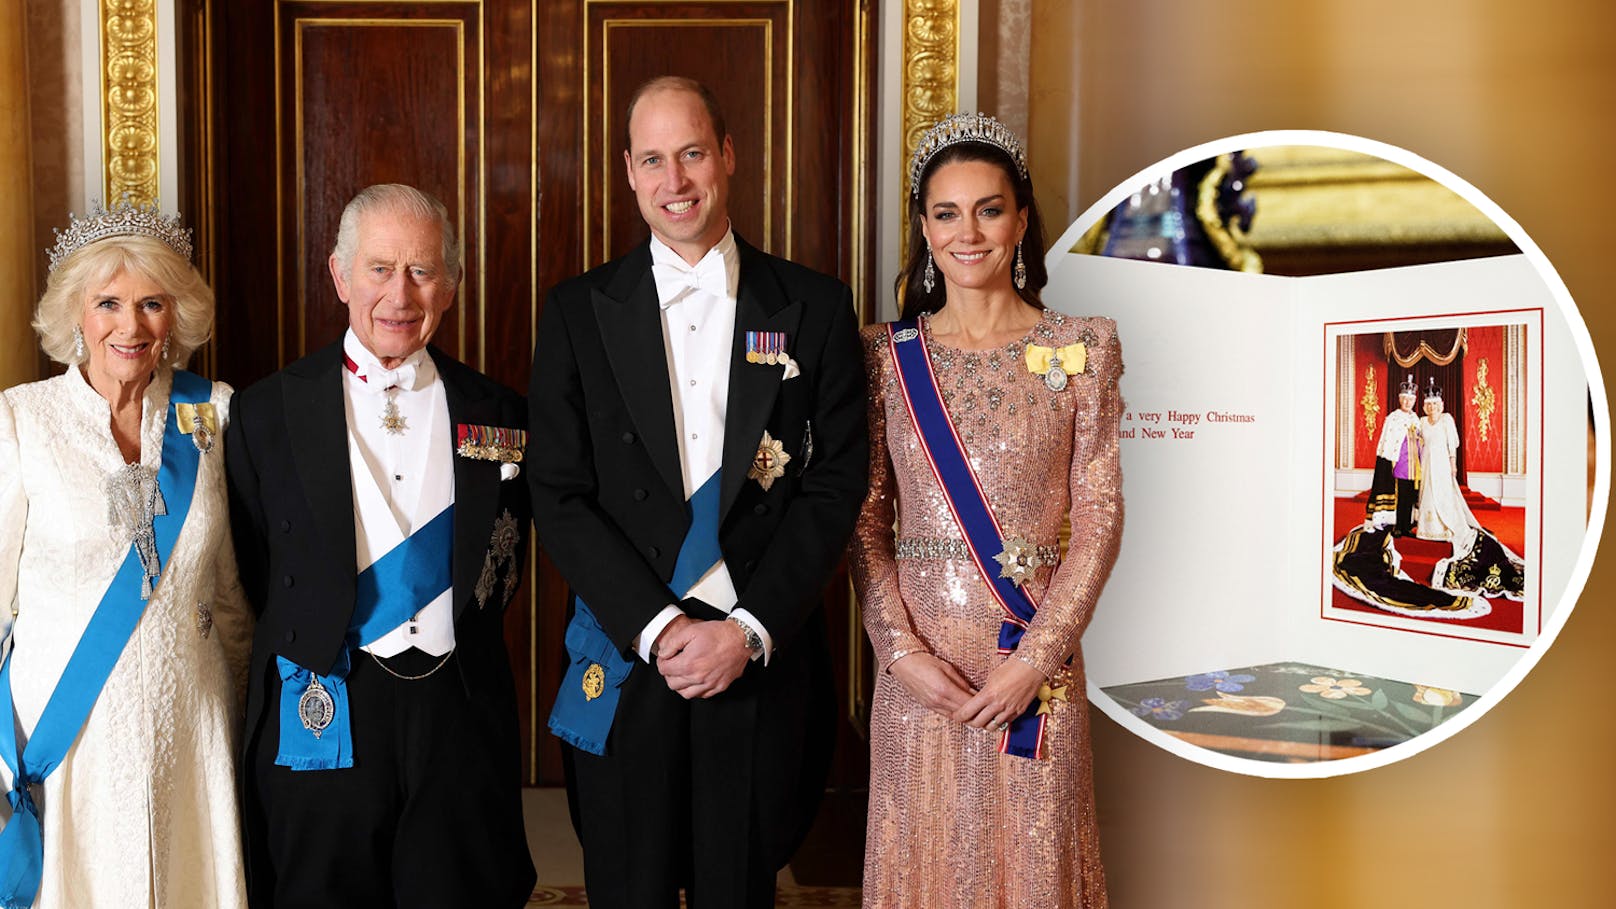 Konträre Grüße: Brit-Royals senden versteckte Botschaft